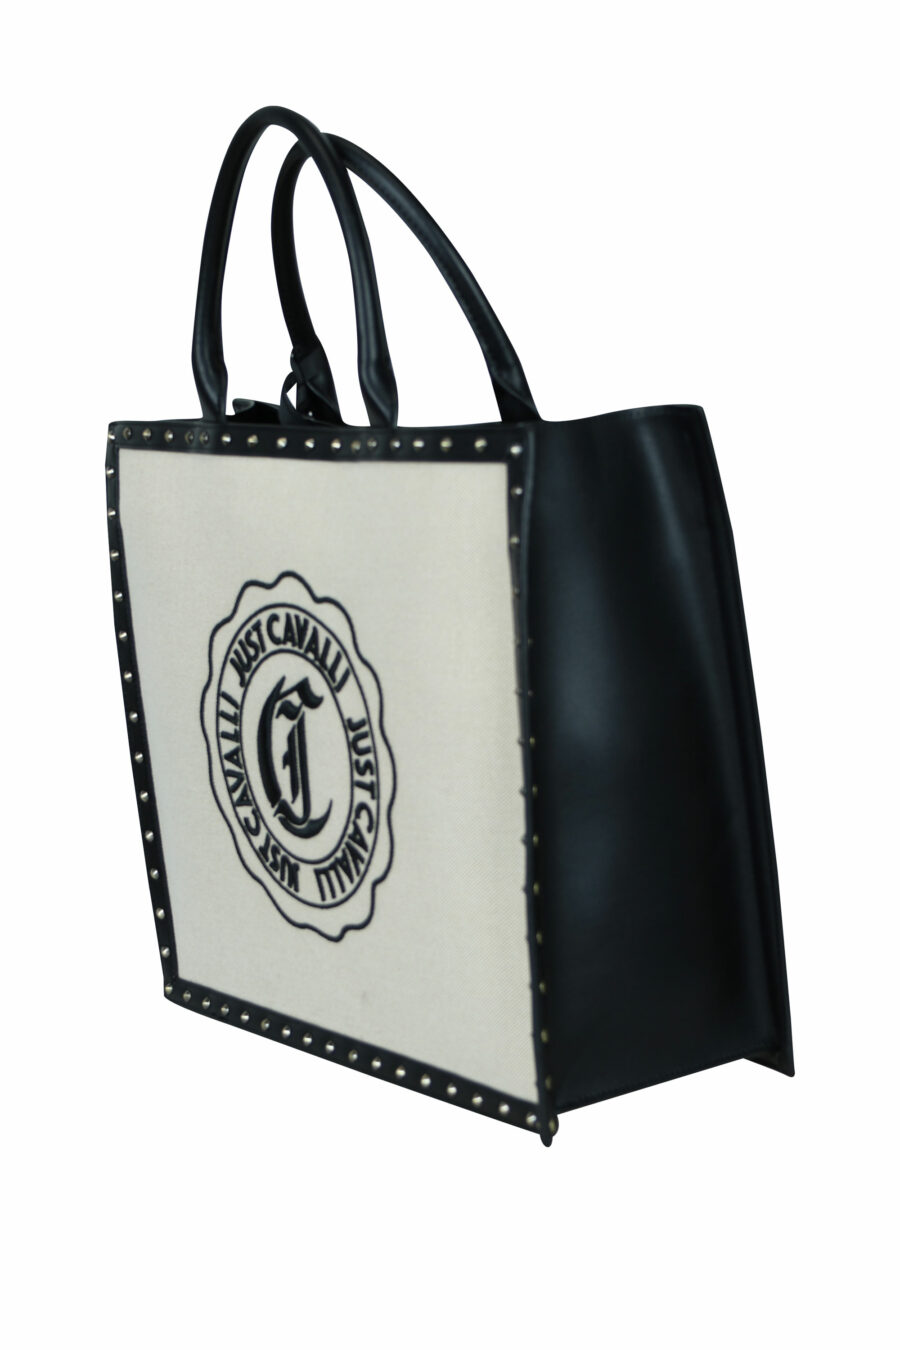 Tote bag black with circular "c" logo - 8052672642431 1